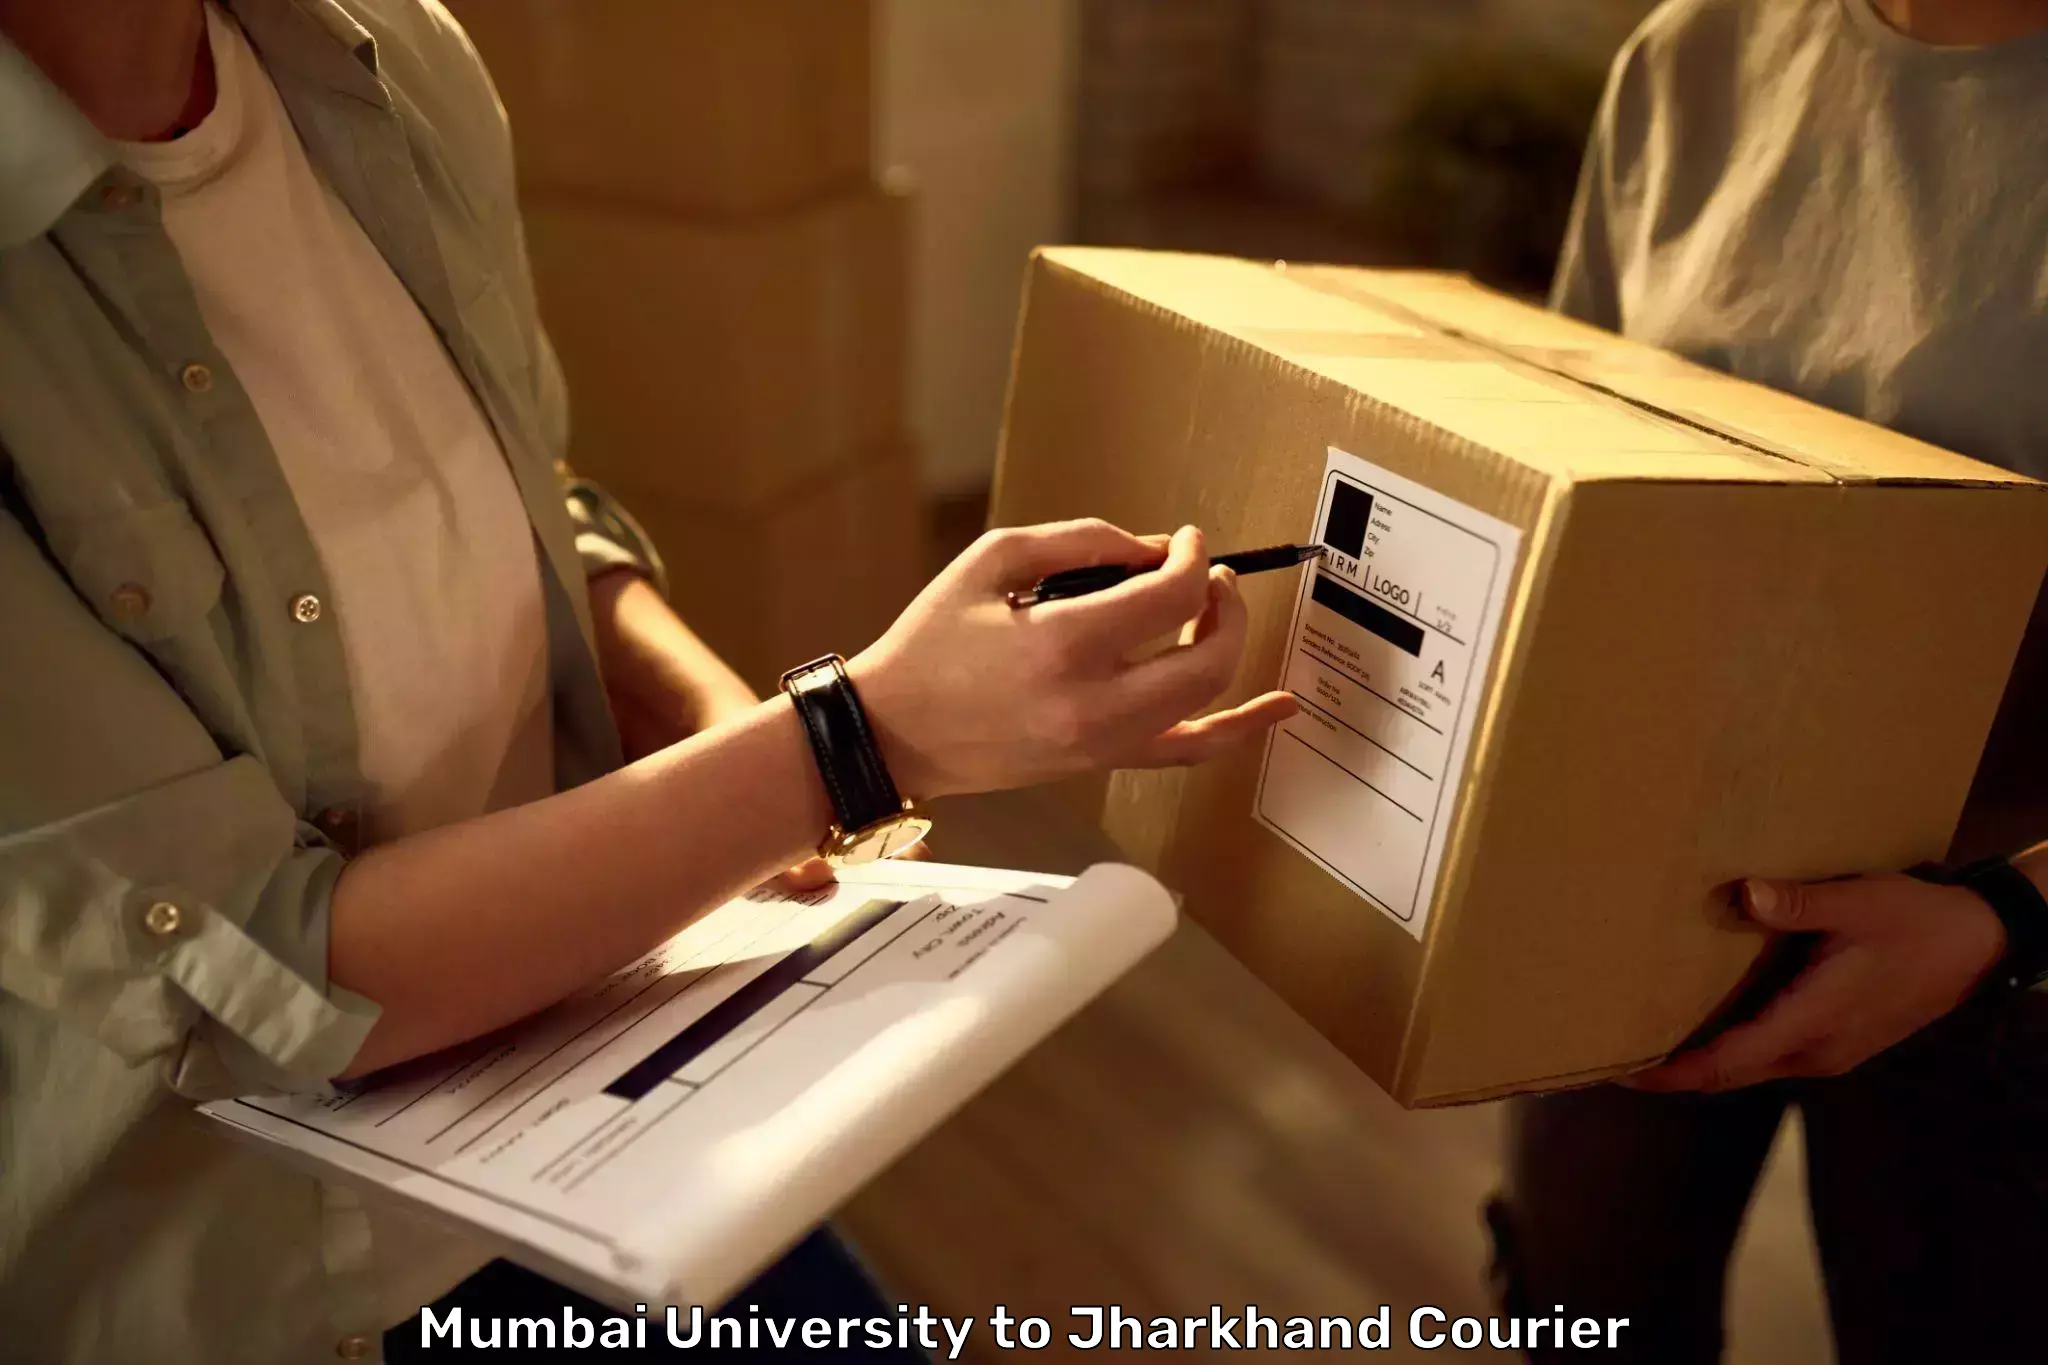 Luggage transport logistics in Mumbai University to Mahagama